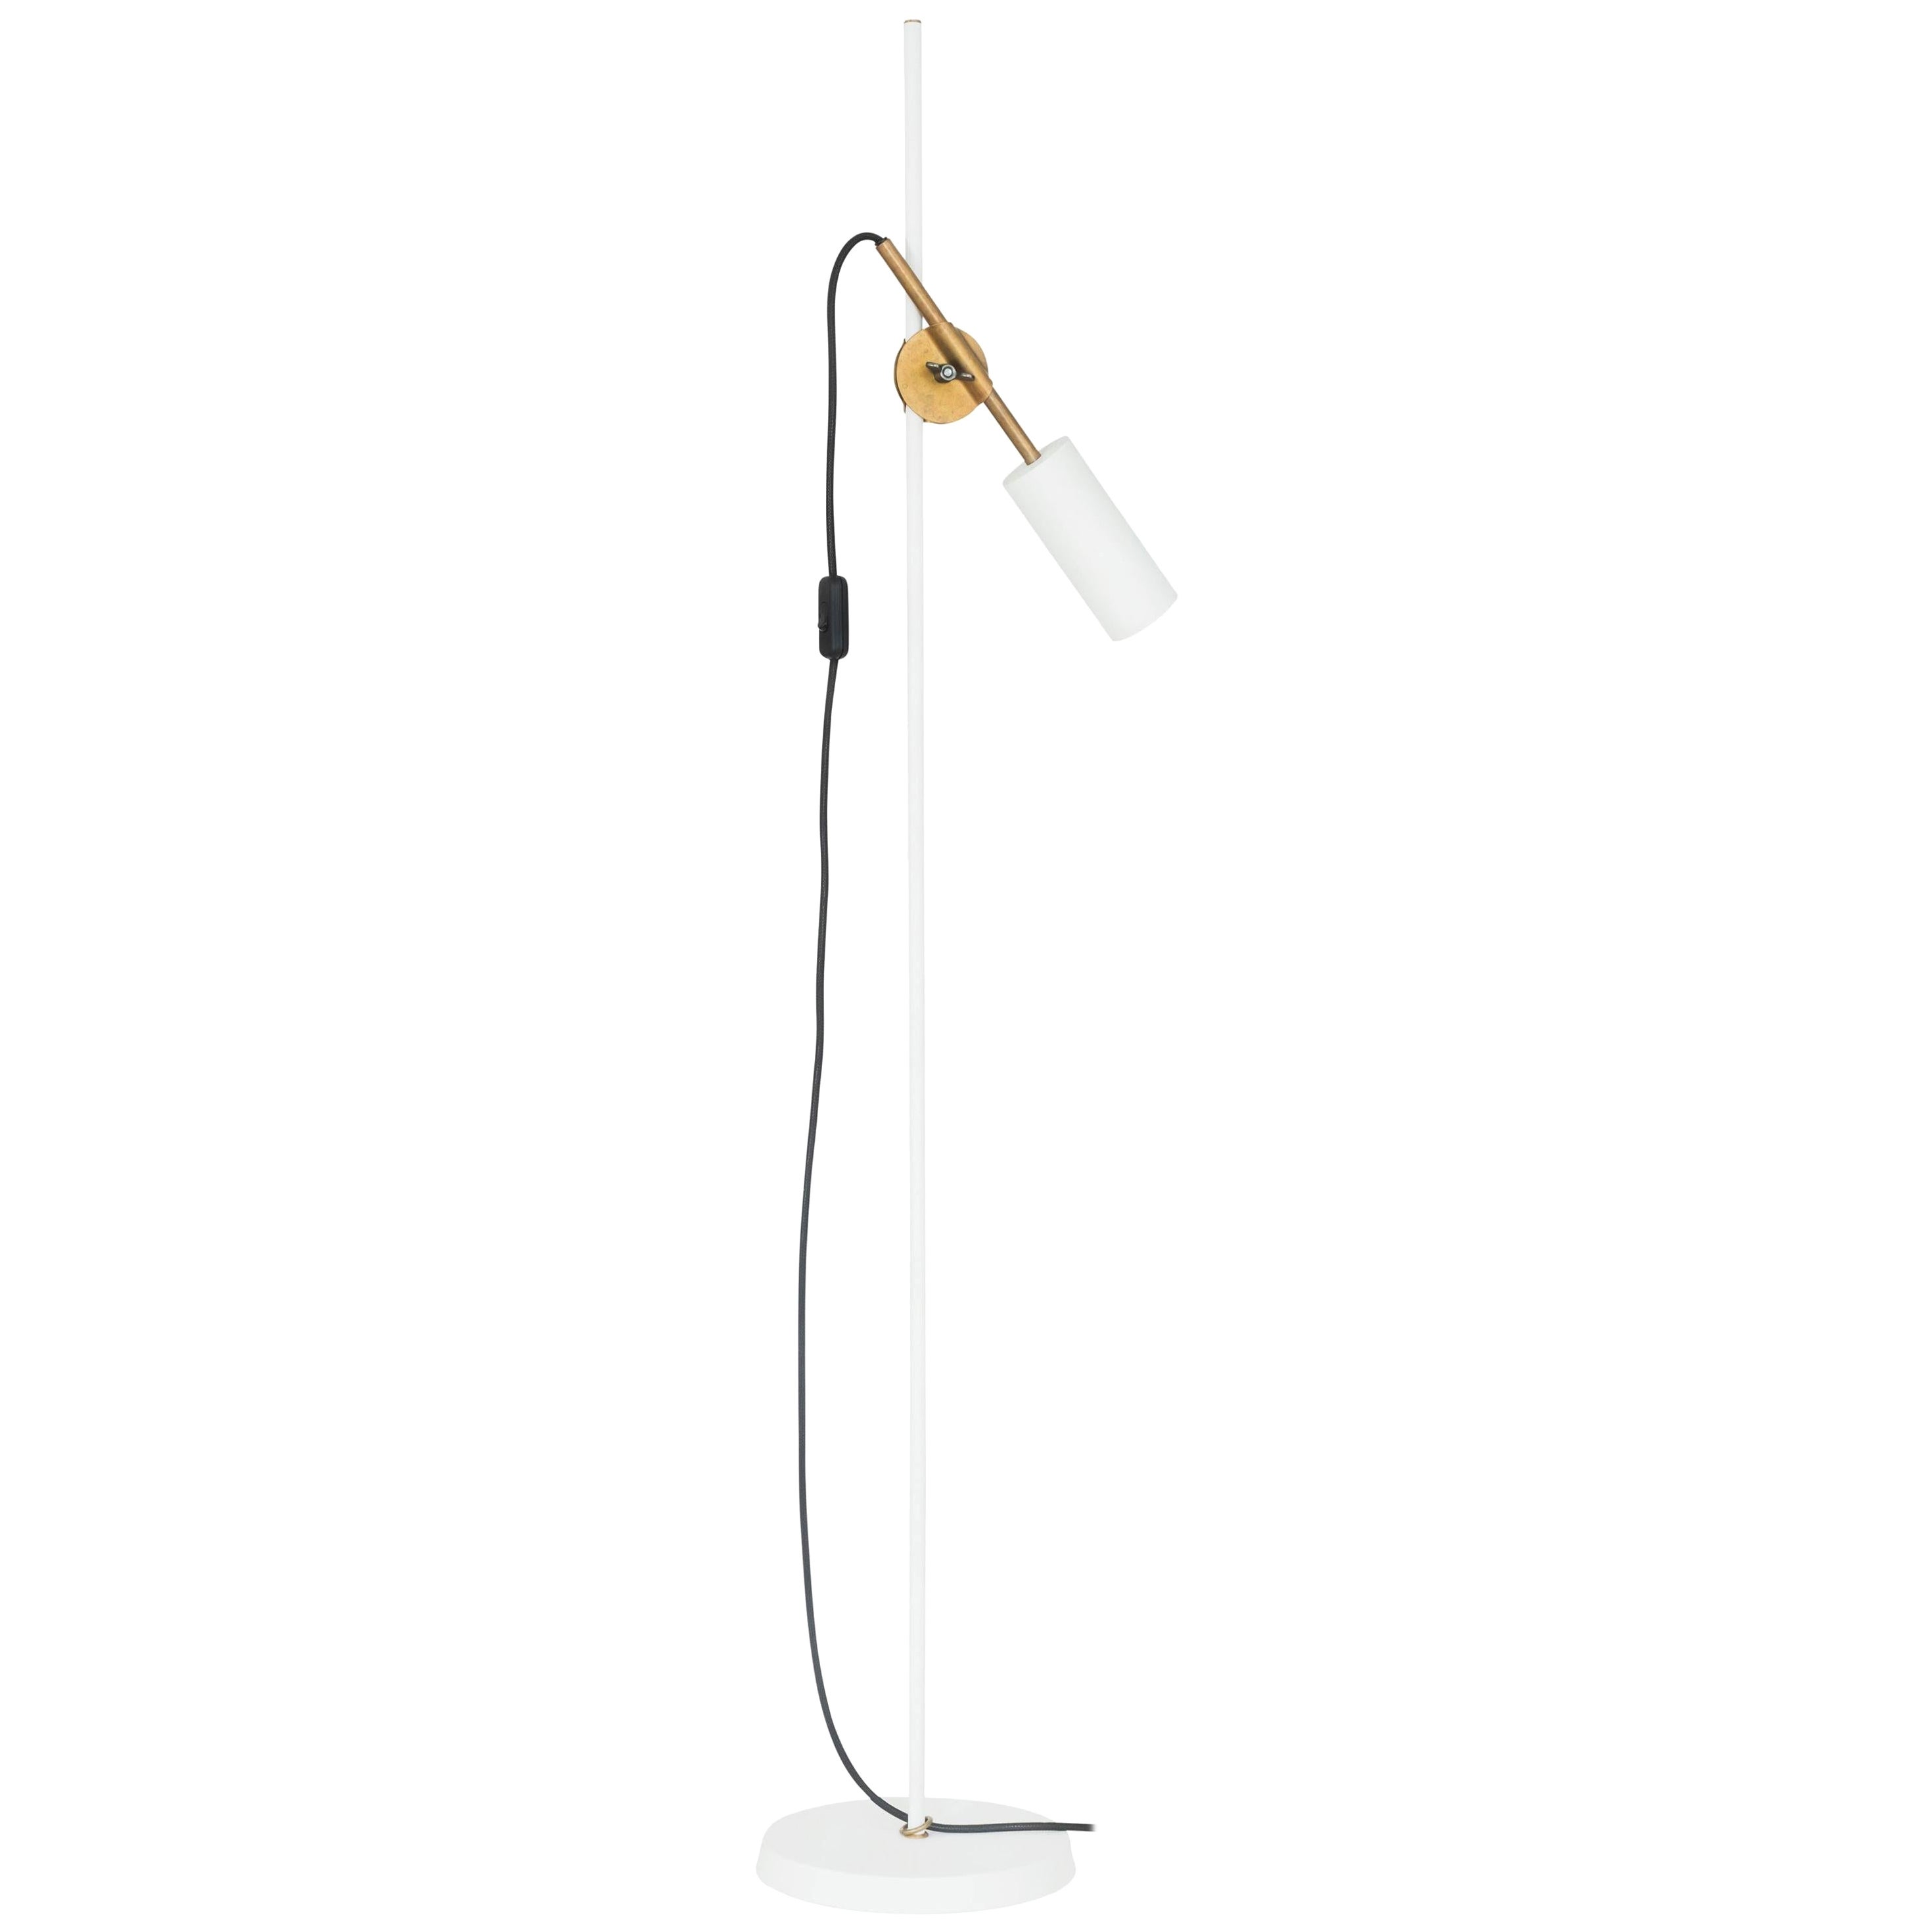 Johan Carpner Stav Floor Lamp White Brass by Konsthantverk For Sale